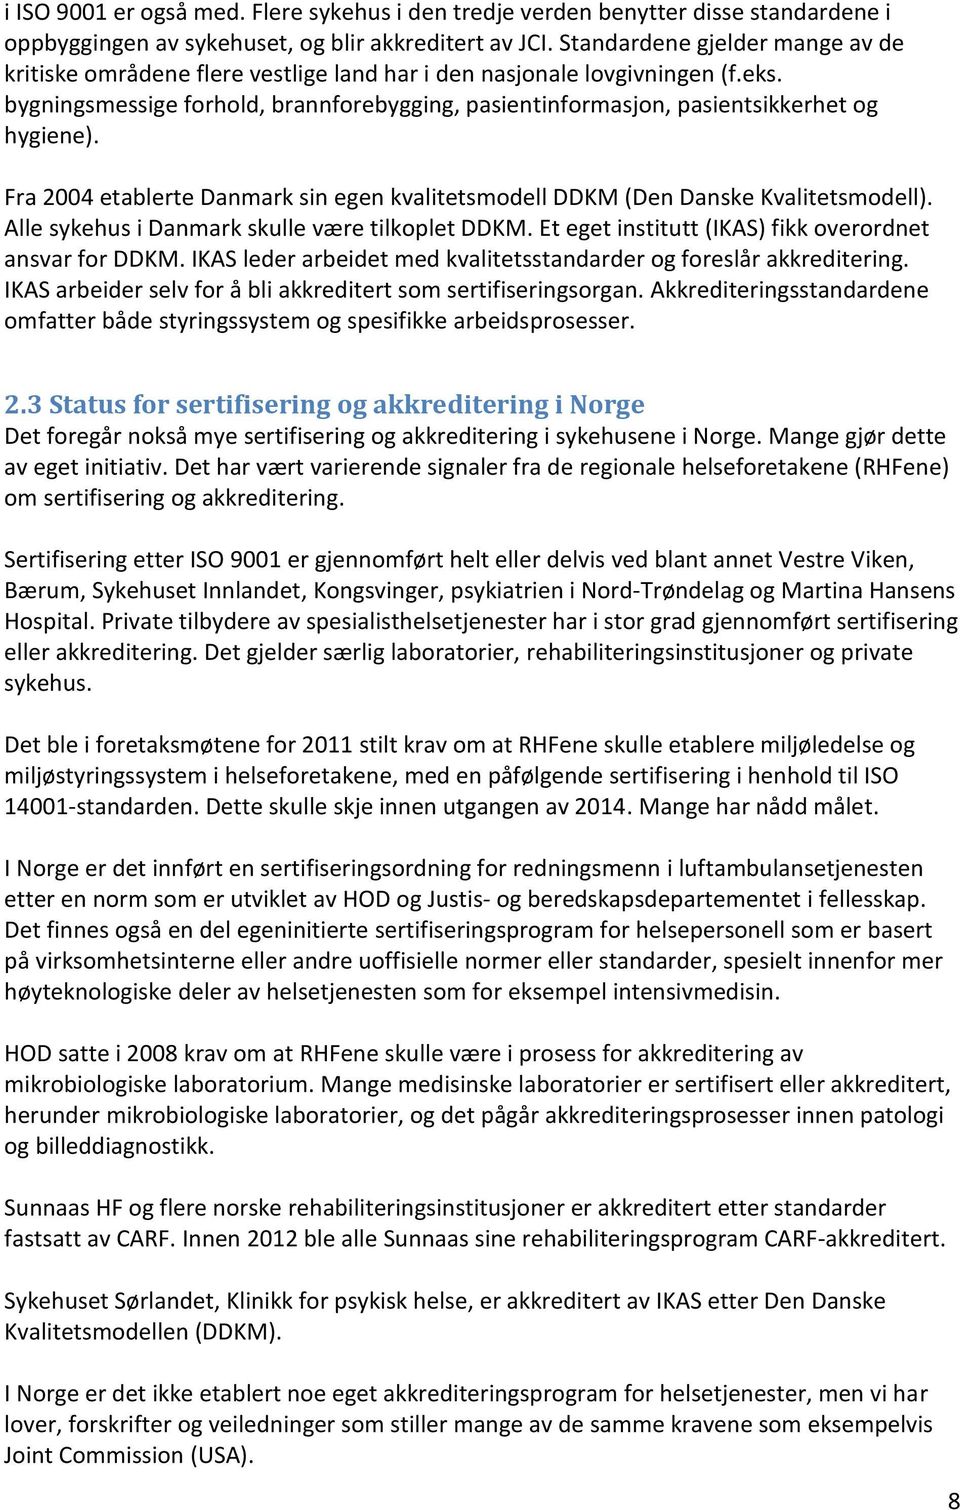 bygningsmessige forhold, brannforebygging, pasientinformasjon, pasientsikkerhet og hygiene). Fra 2004 etablerte Danmark sin egen kvalitetsmodell DDKM (Den Danske Kvalitetsmodell).